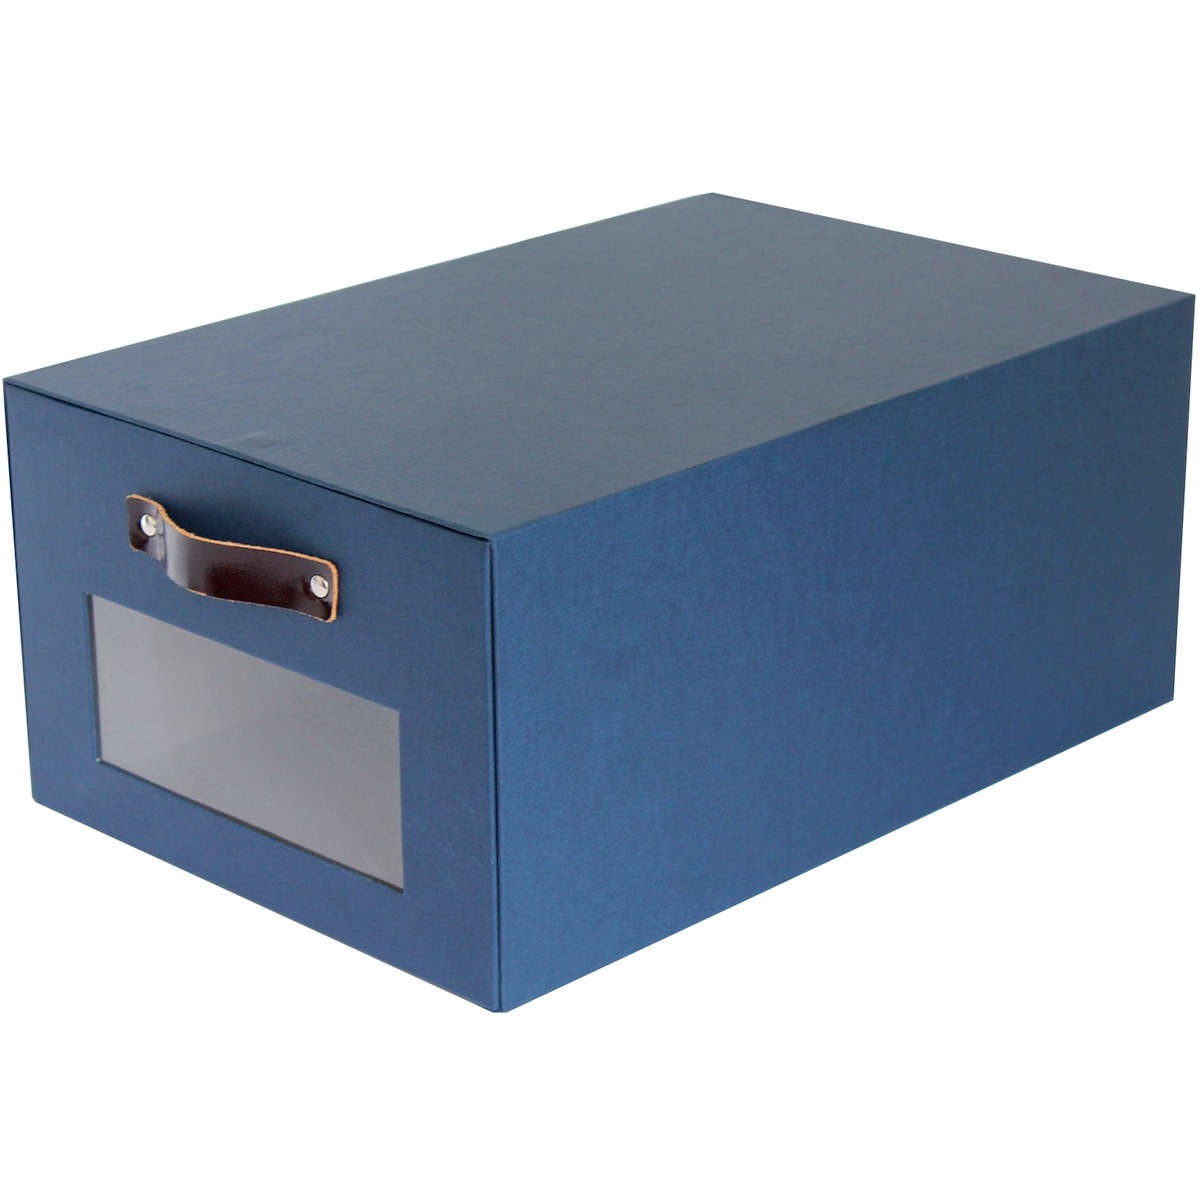 Картонная коробка для хранения, 33.5 x 23 x 15 см (Maxi Style HM-333-1)